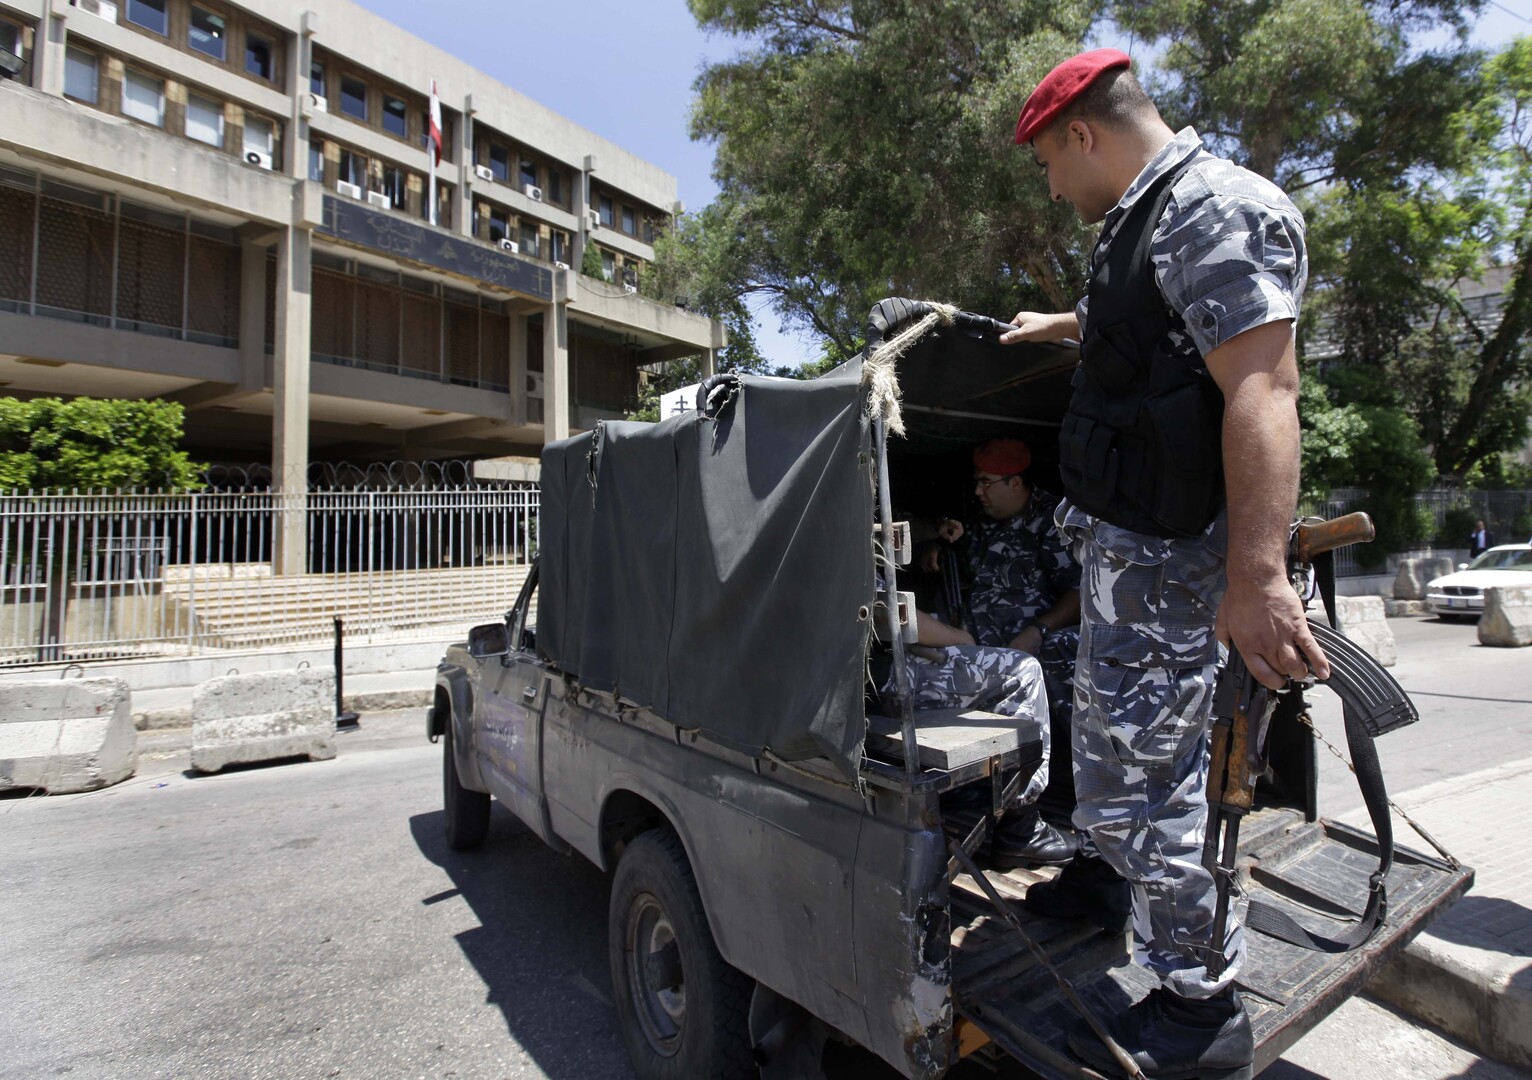 لبنان.. ضبط حبوب كبتاغون معدّة للتهريب إلى دولة إفريقية (فيديو)